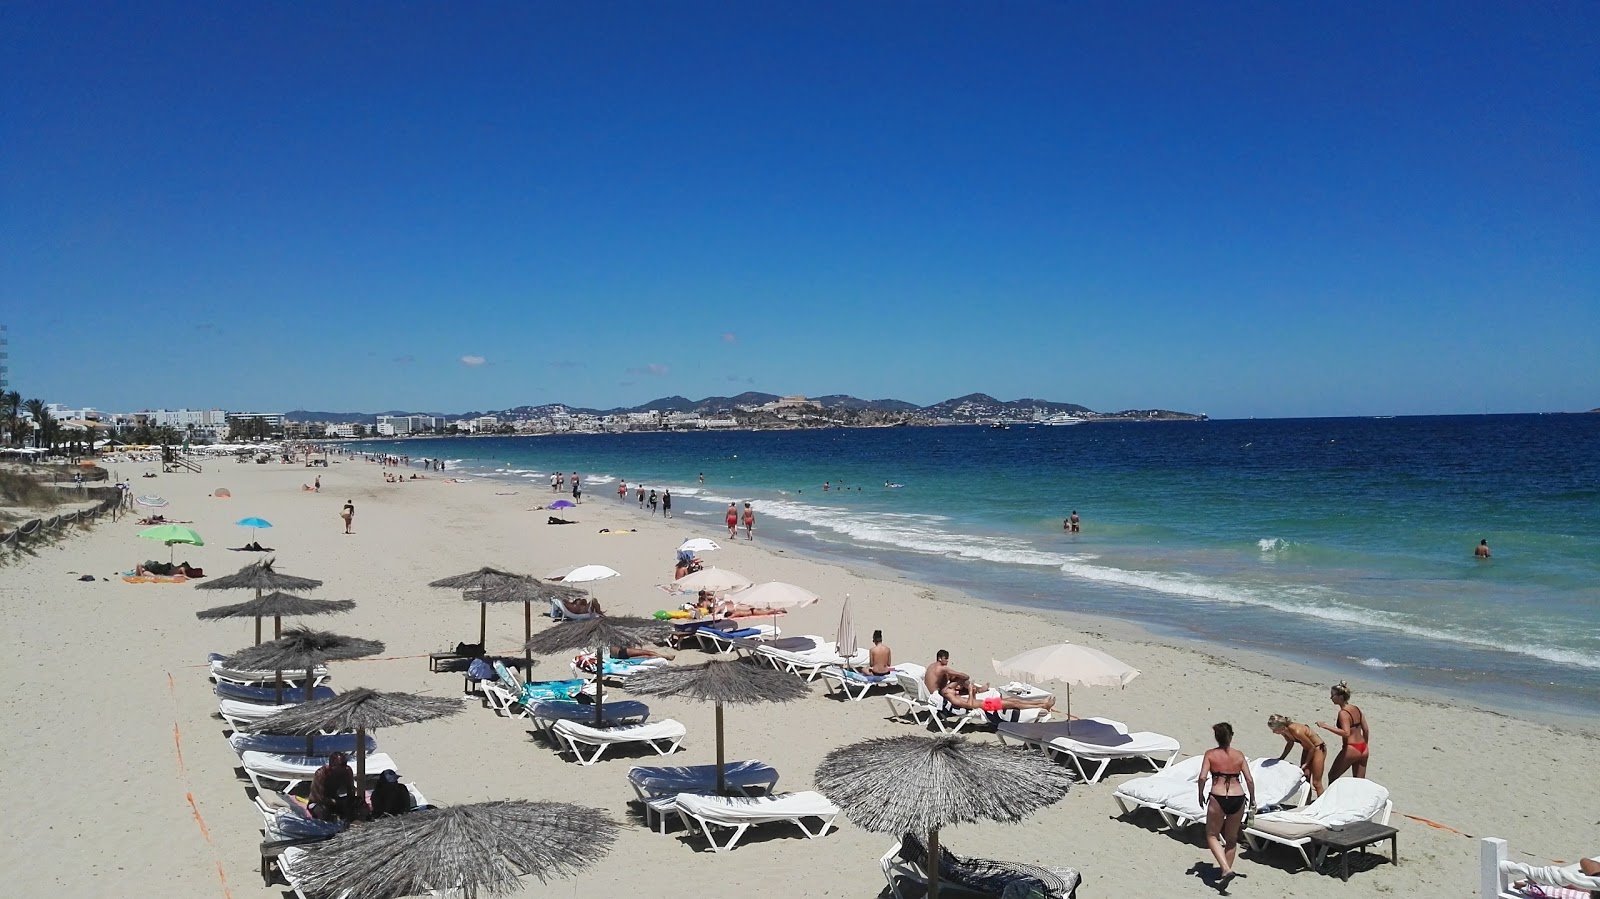 Fotografie cu Playa Den Bossa cu o suprafață de apa pură turcoaz